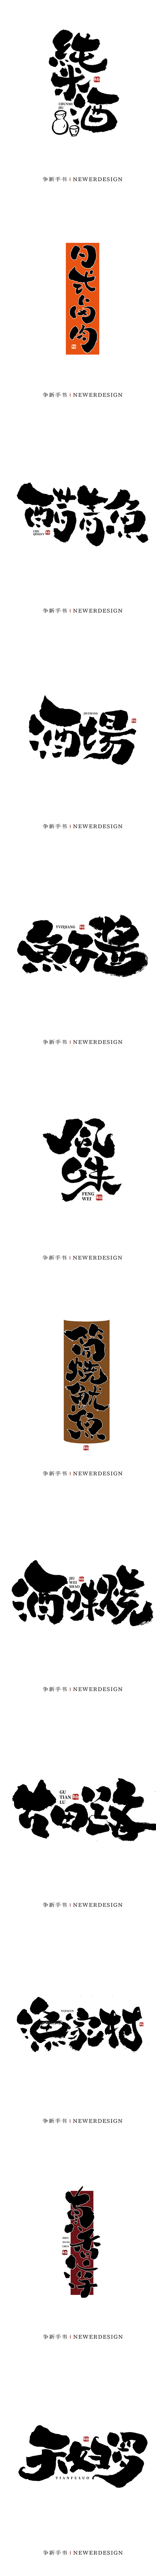 手写日式字体设计 争新手书 字体传奇网推...